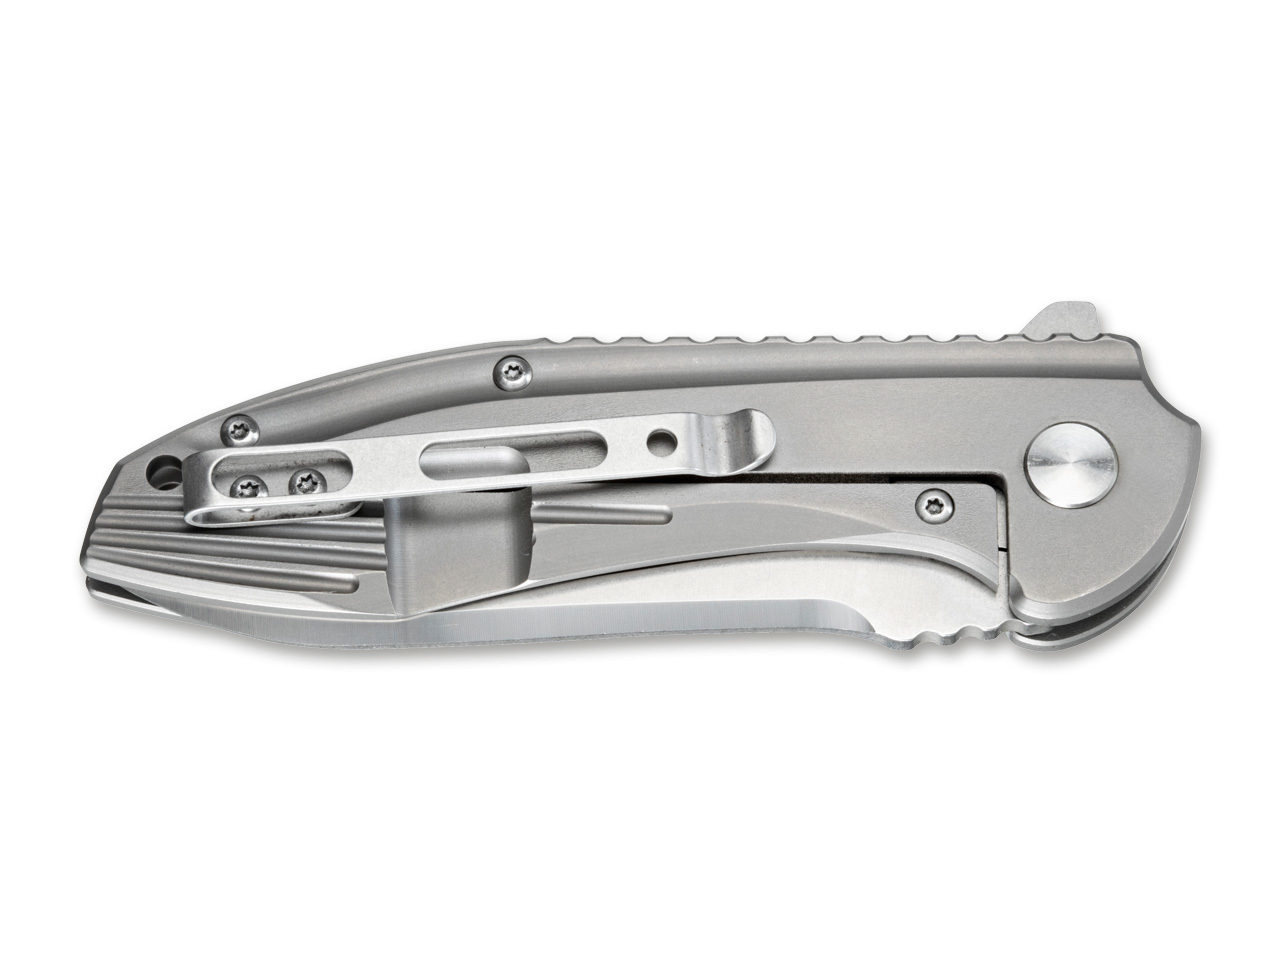 Складной нож Magnum Quantum - Boker 01RY975, сталь 440A Satin, рукоять нержавеющая сталь - фото 9